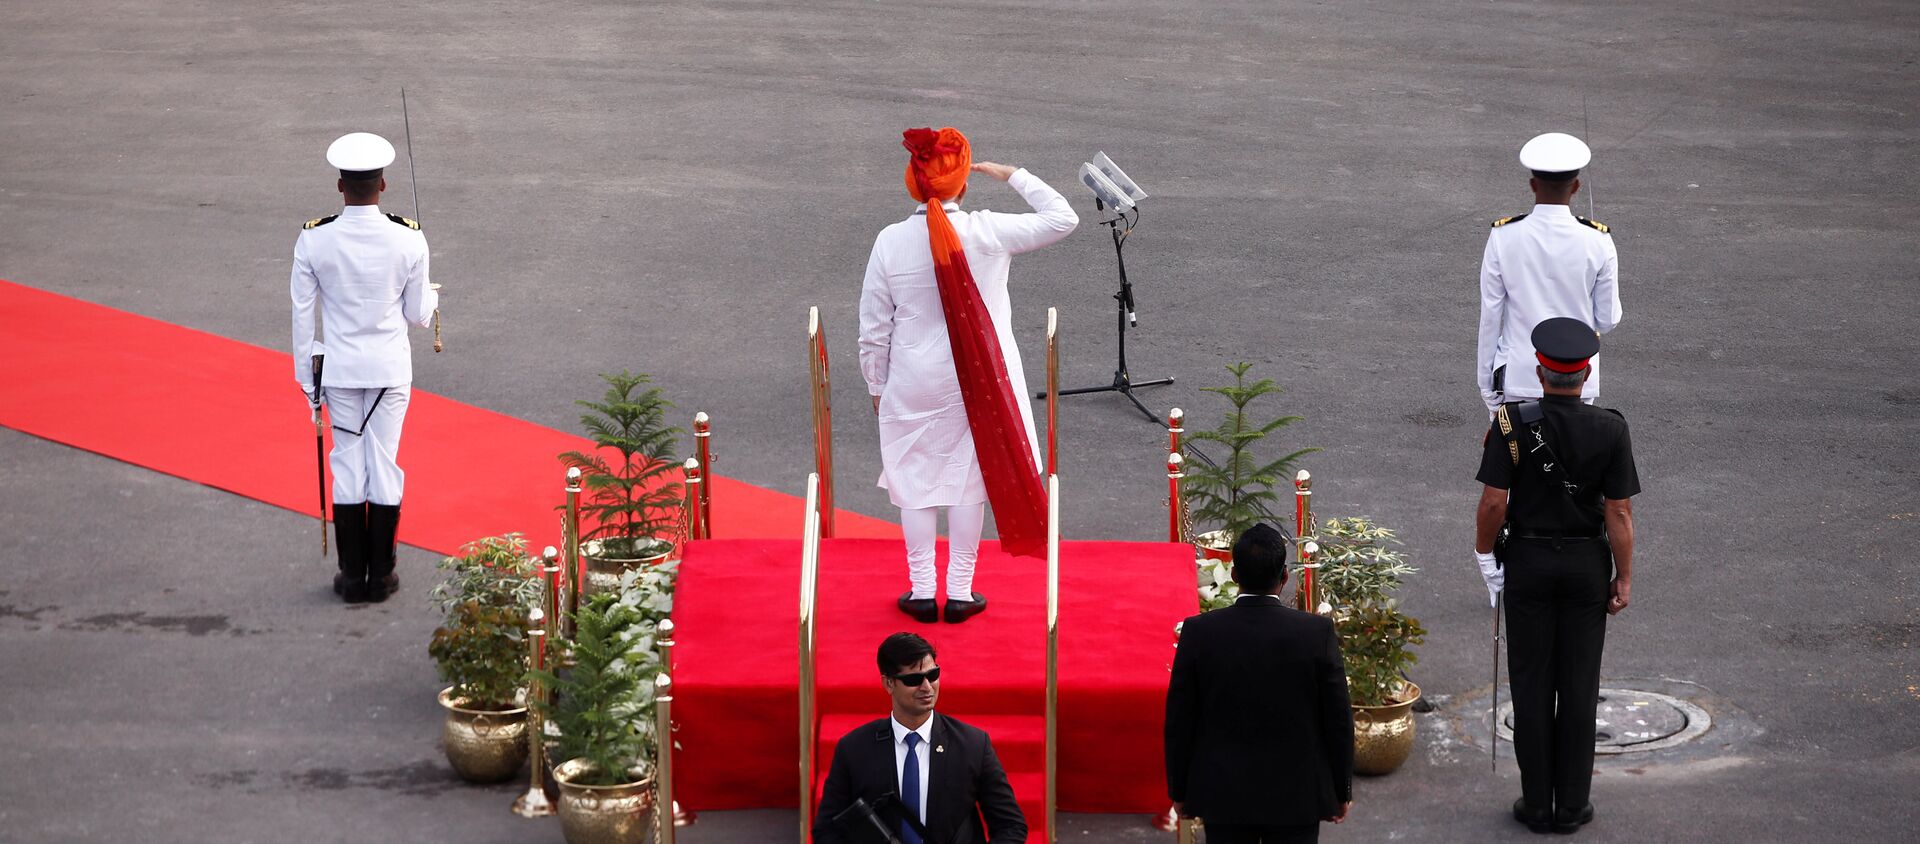 Hindistan Başbakanı Narendra Modi başkent Yeni Delhi'deki Kızıl Kale'de yapılan Bağımsızlık Günü kutlamalarında konuştu - Sputnik Türkiye, 1920, 15.08.2018